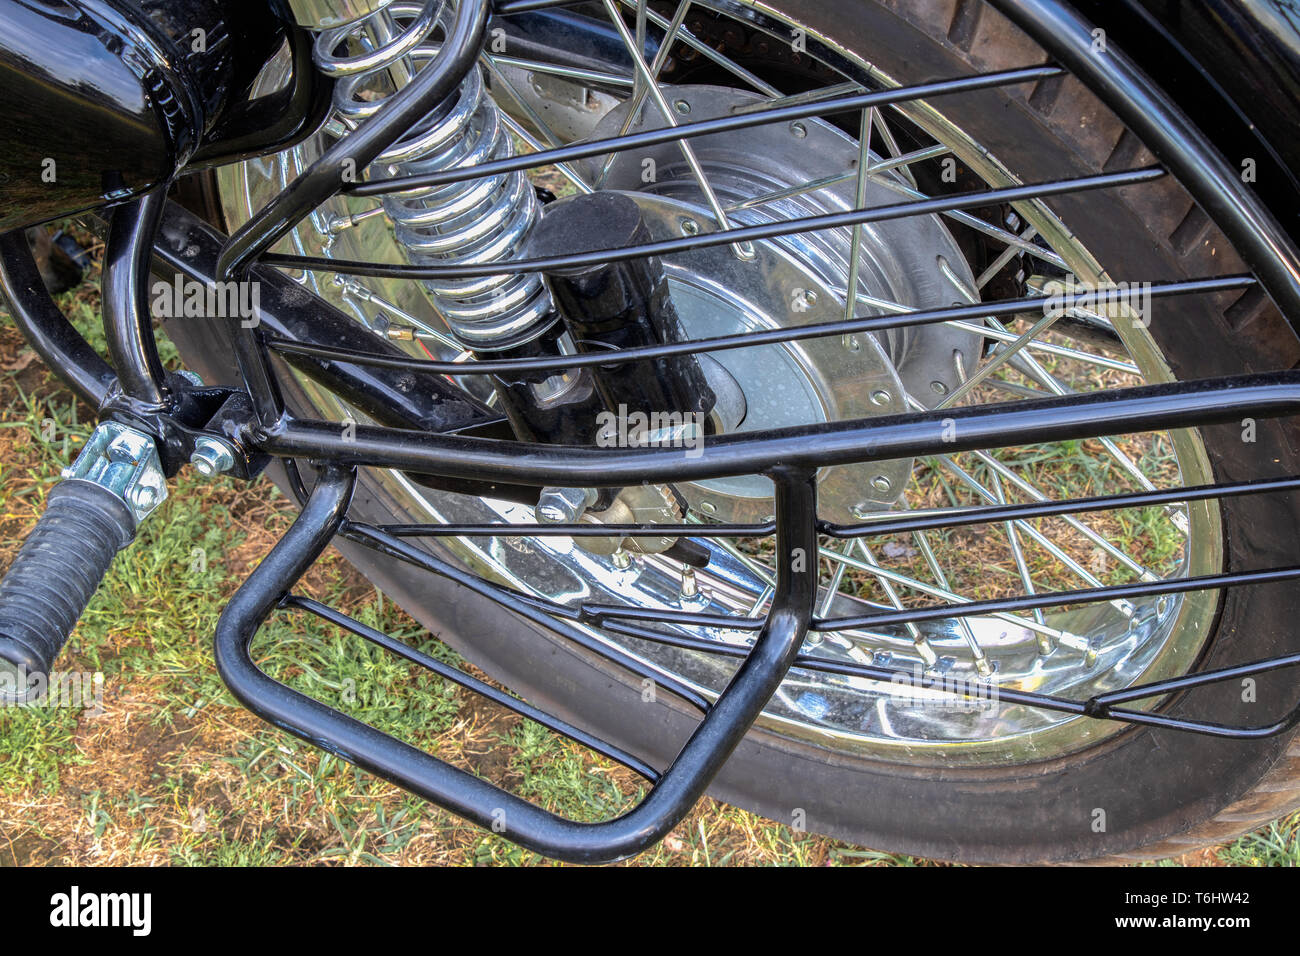 Bike pneumatico posteriore e poggiapiedi Foto Stock